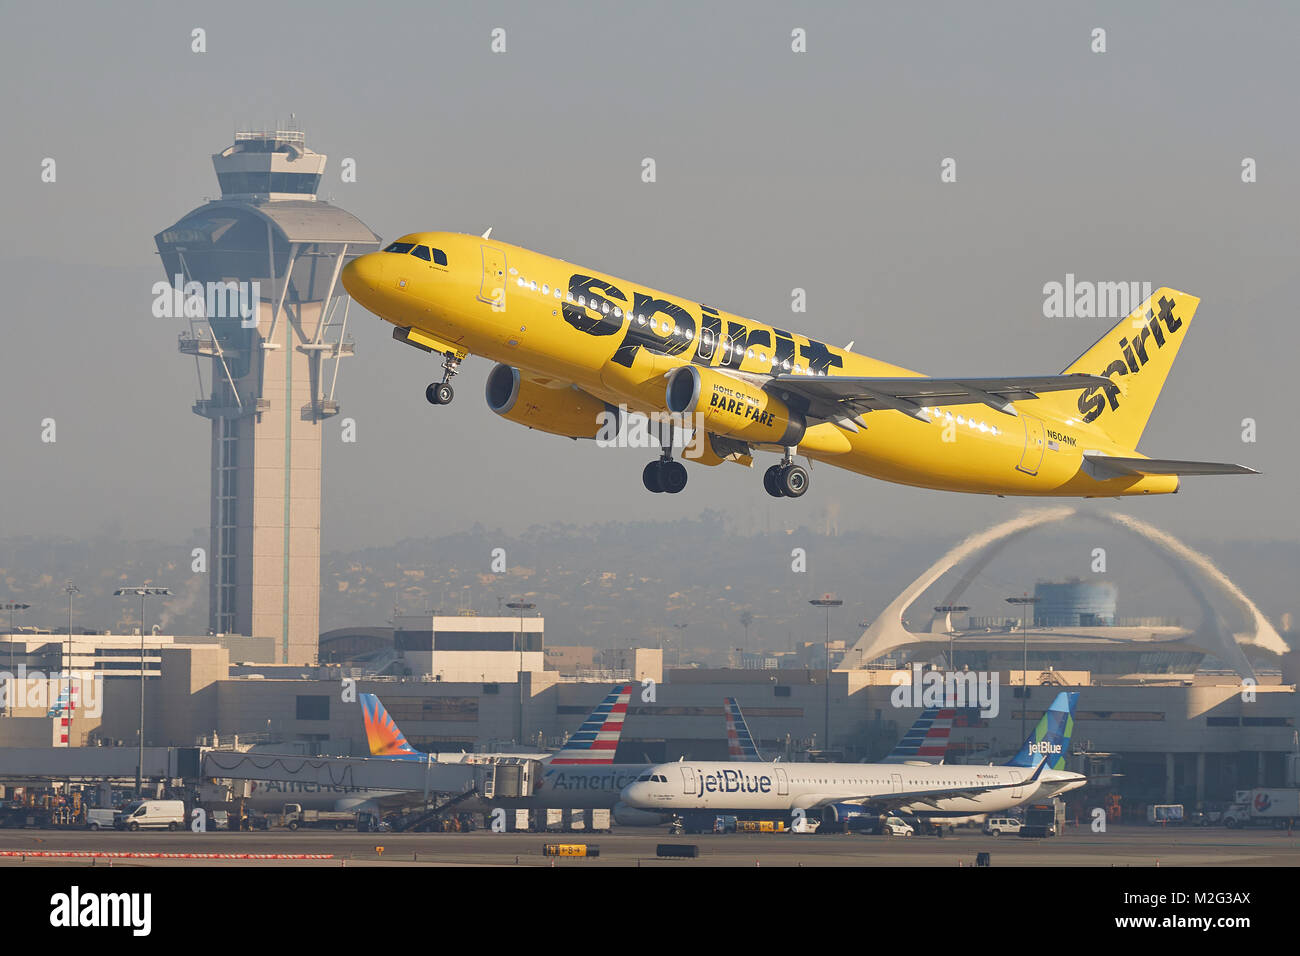 Spirit Airlines Airbus A320 jaune vif qui décollait de l'Aéroport International de Los Angeles, la tour de contrôle et le thème bâtiment derrière. Banque D'Images